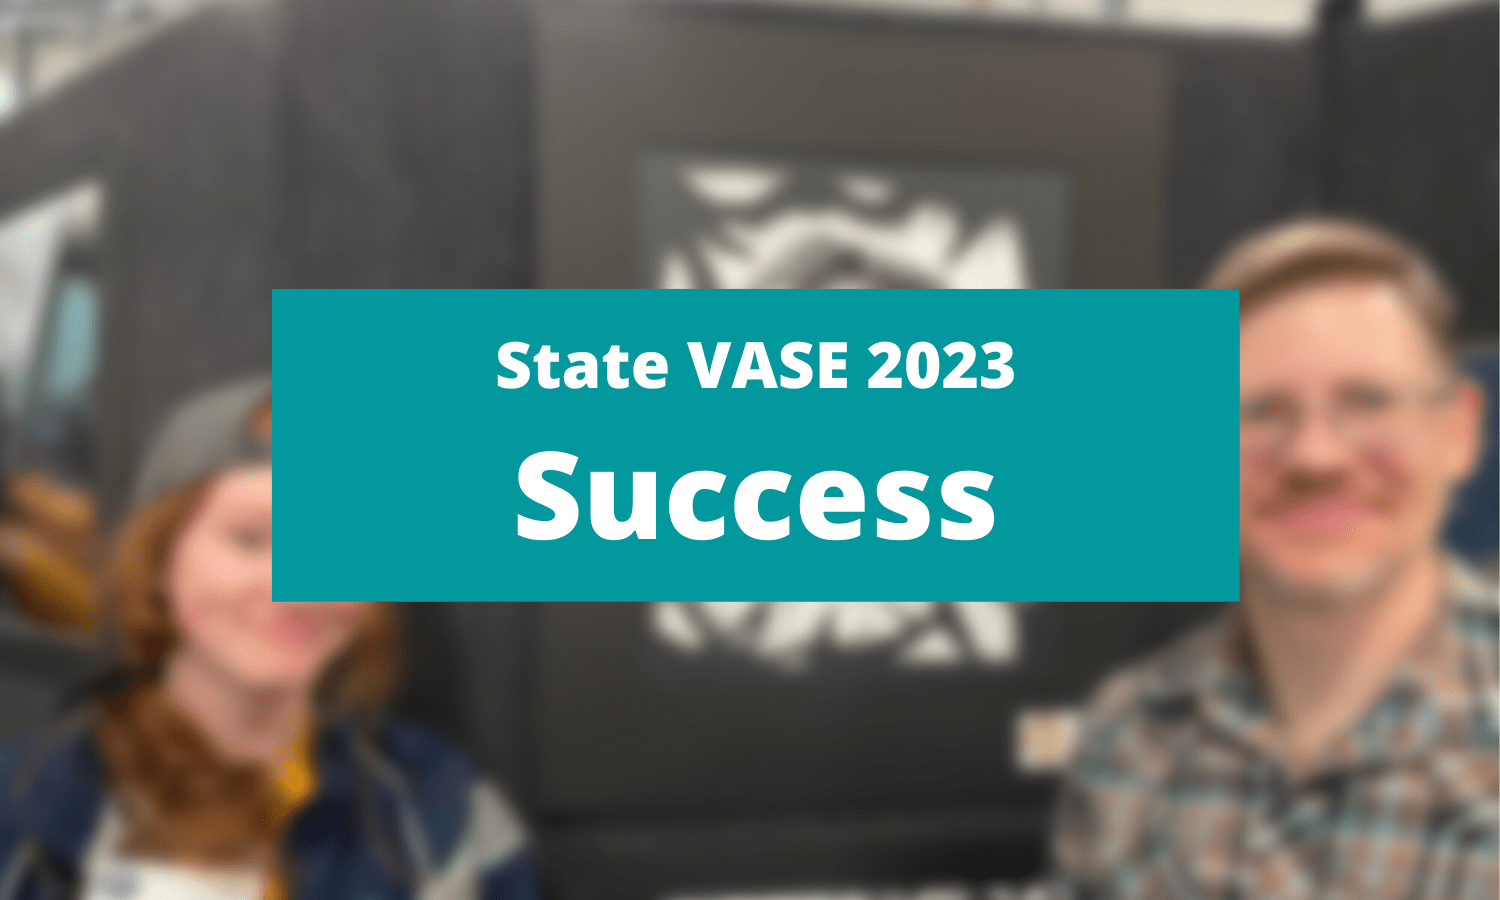 State VASE Success